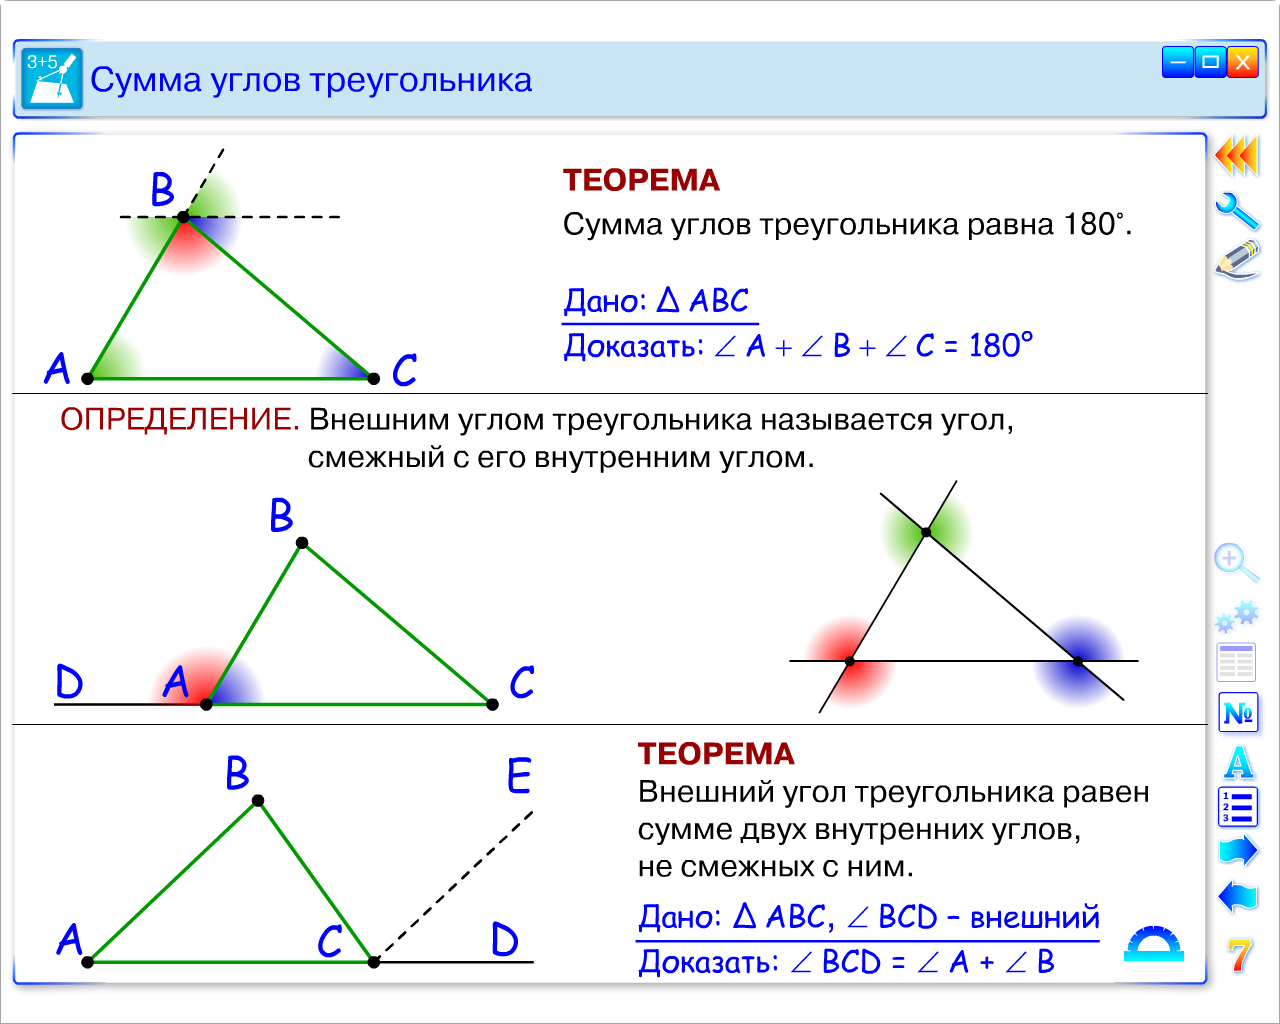 Урок геометрии в 7 классе по теме: «Применение теоремы о сумме углов треугольника и теоремы о внешнем угле треугольника»